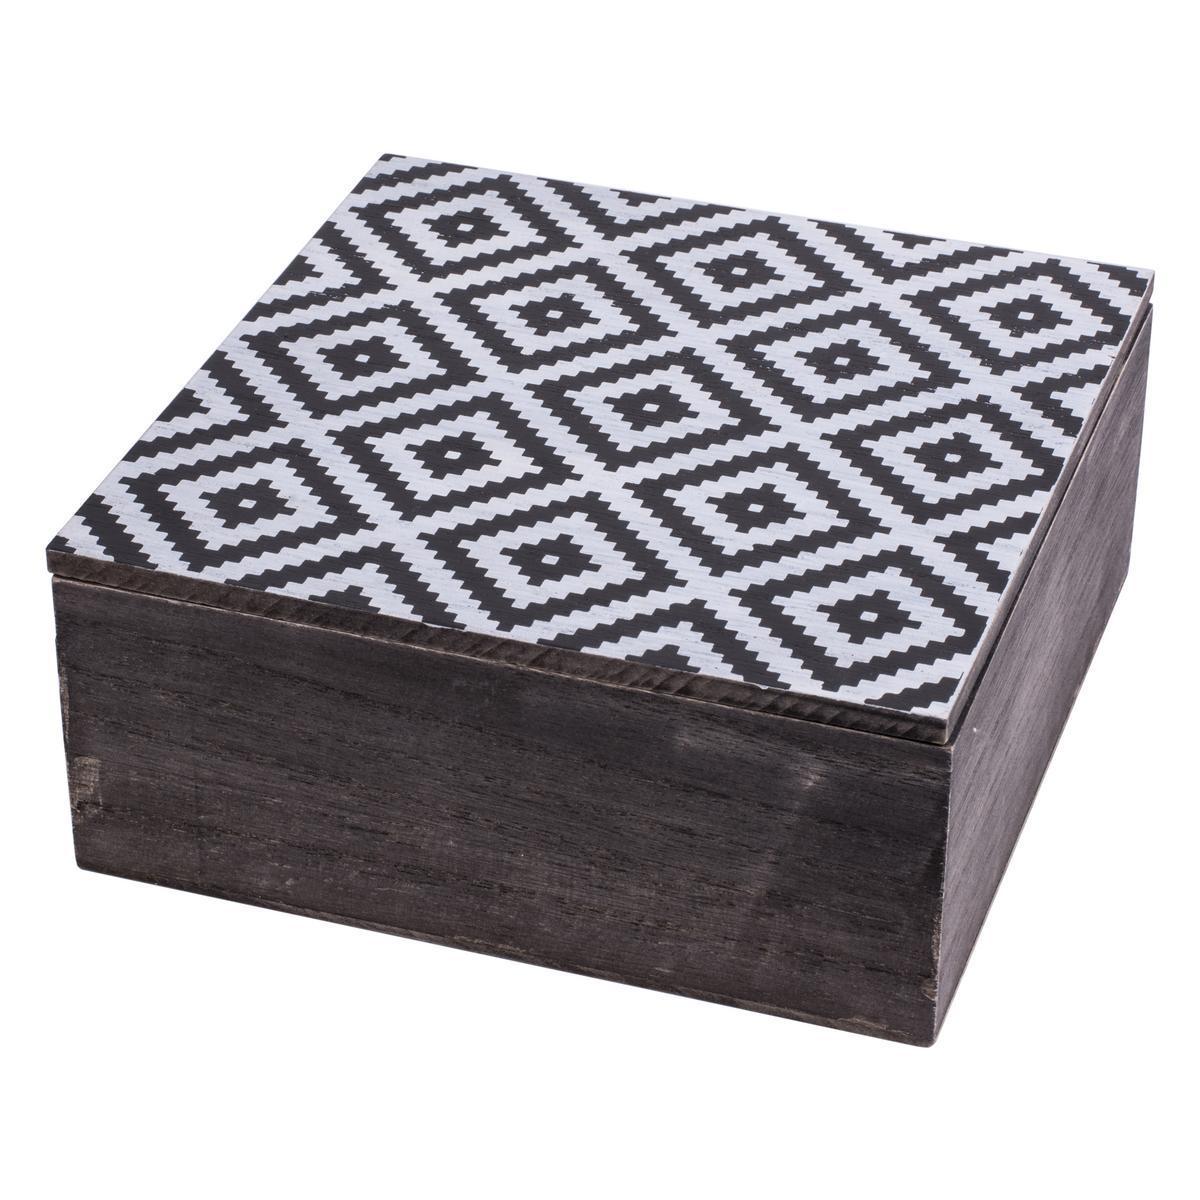 Boîte Graphique - Mdf - 18,5 x 18,5 x H 8 cm - Noir et gris